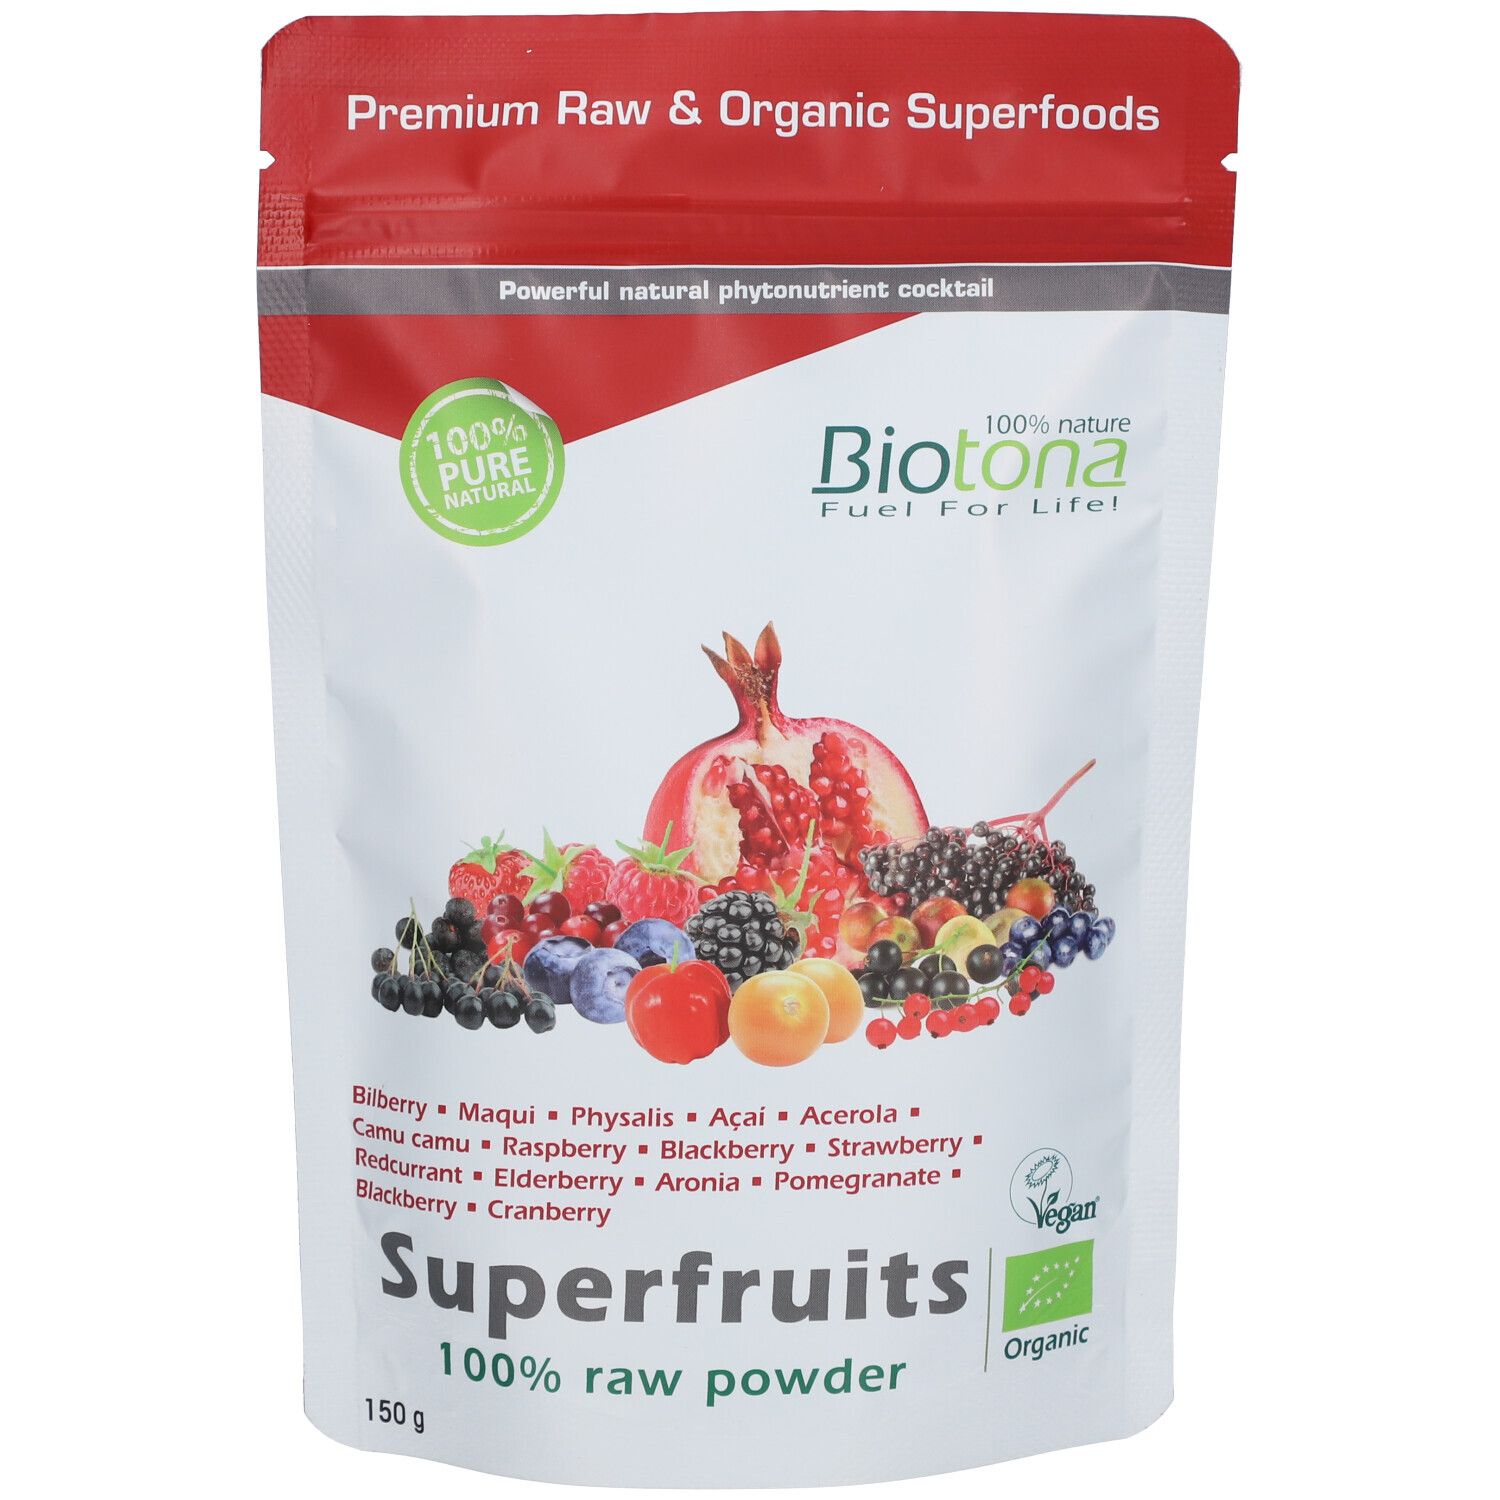 Biotana Superfruits